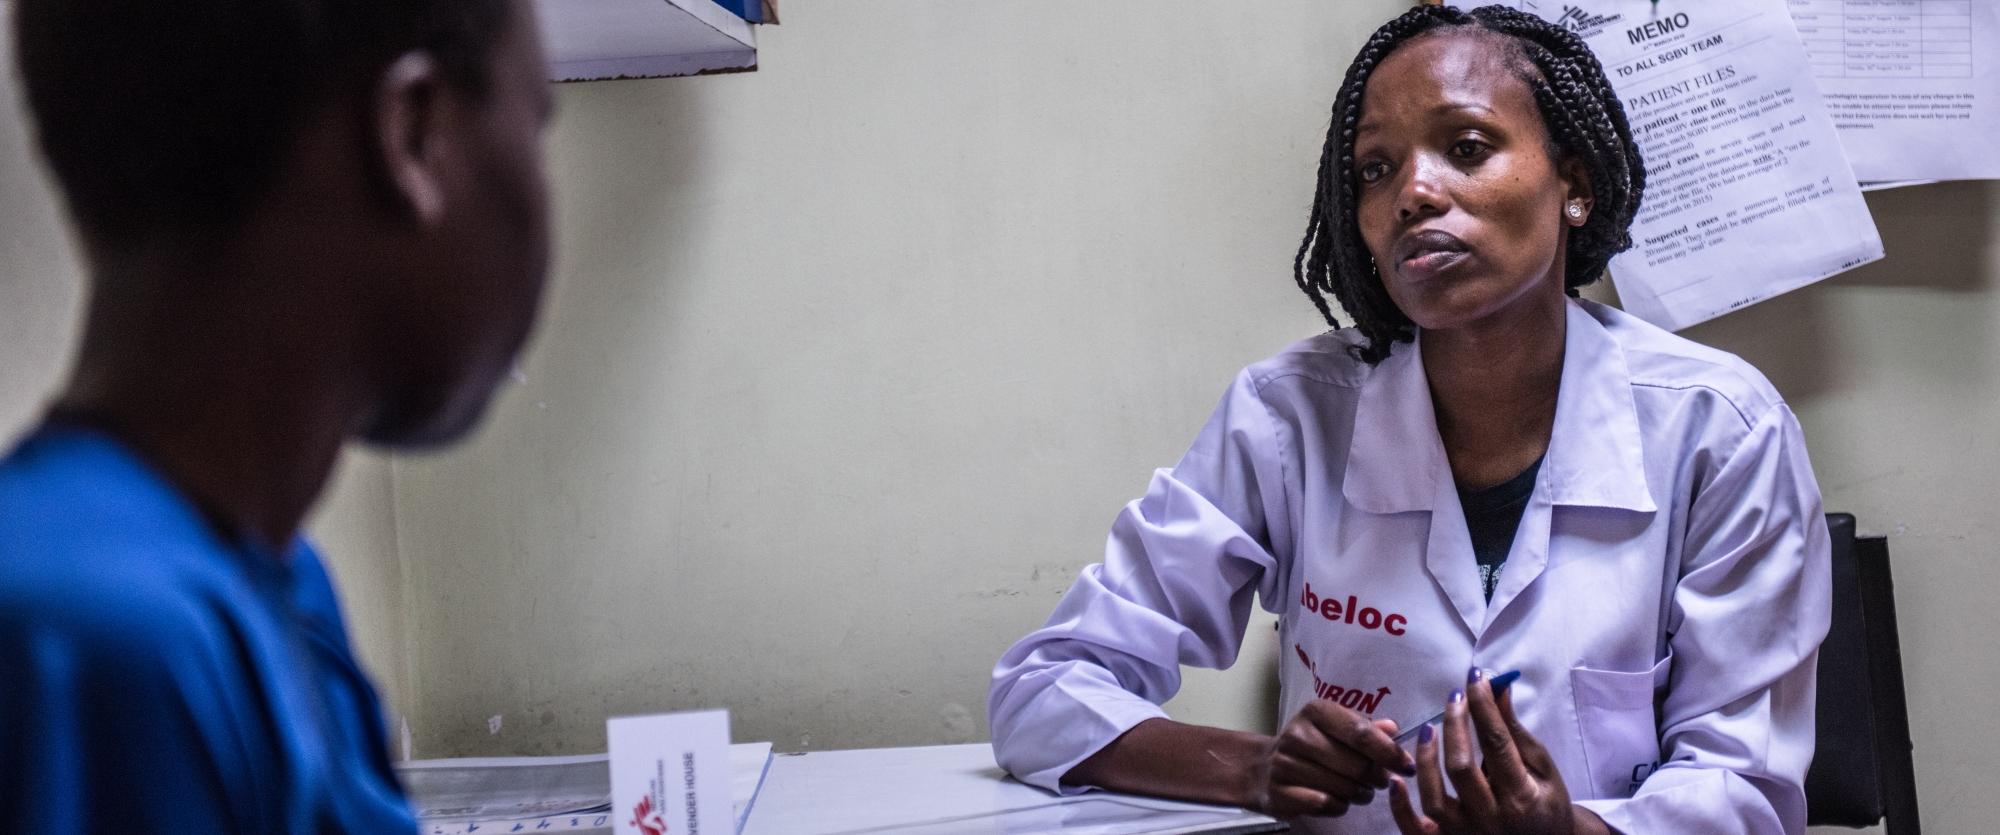 Depuis 2008, MSF propose une prise en charge aux victimes de violence sexuelle et sexiste, à Nairobi, au Kenya.